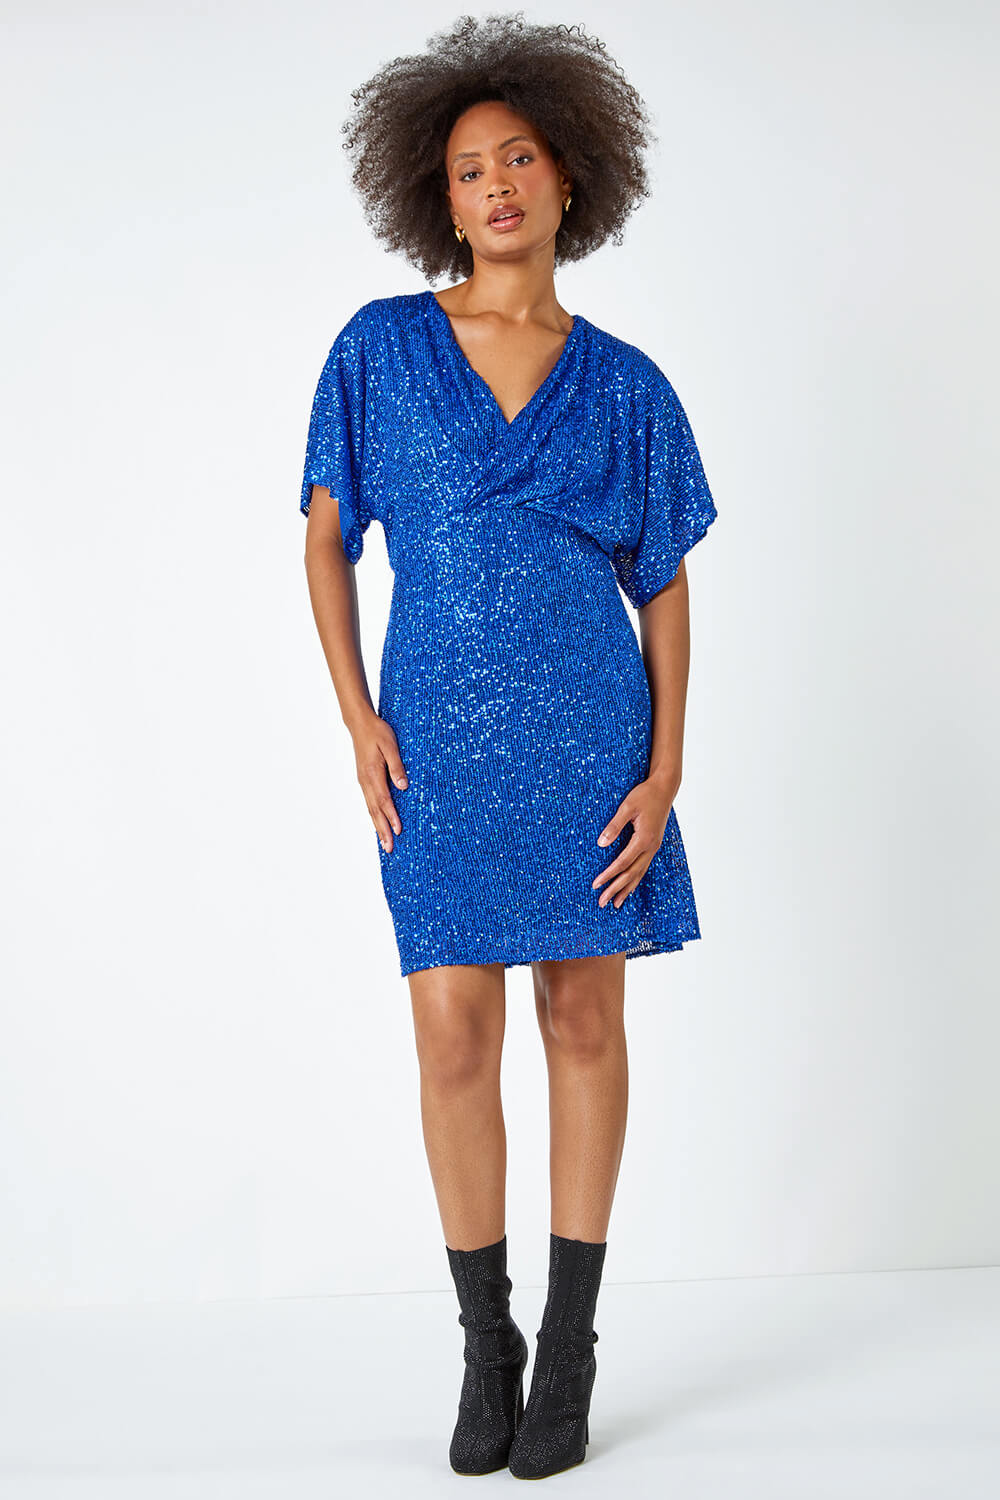 Royal Blue Sequin Embellished Wrap Stretch Dress, Image 4 of 6